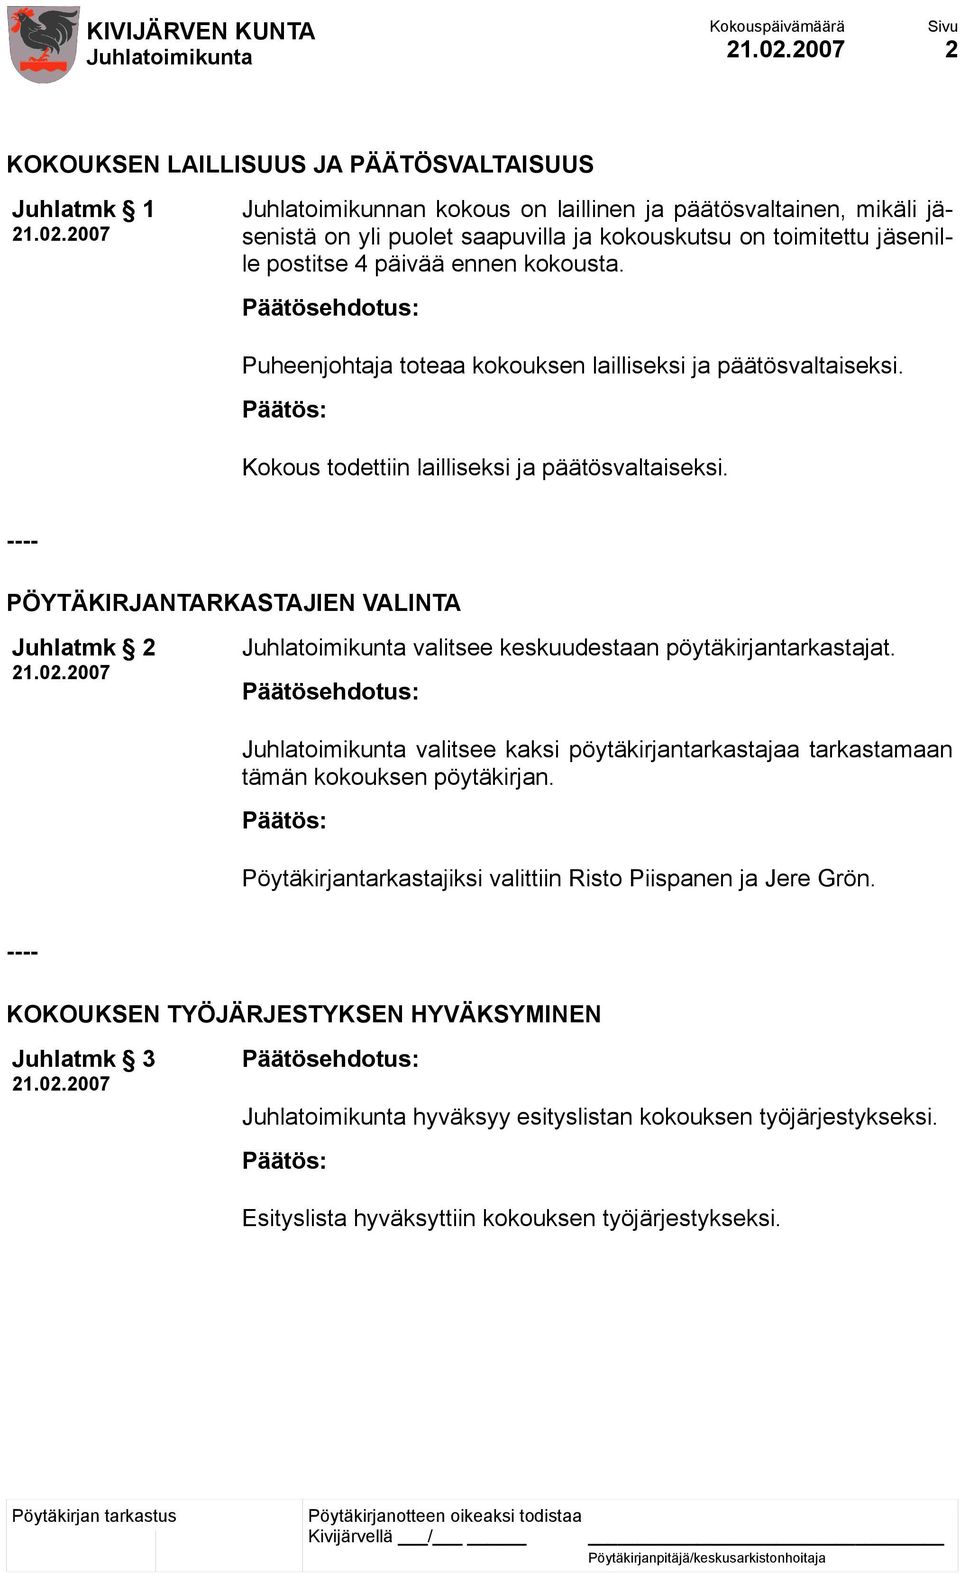 2007 valitsee keskuudestaan pöytäkirjantarkastajat. valitsee kaksi pöytäkirjantarkastajaa tarkastamaan tämän kokouksen pöytäkirjan. Pöytäkirjantarkastajiksi valittiin Risto Piispanen ja Jere Grön.